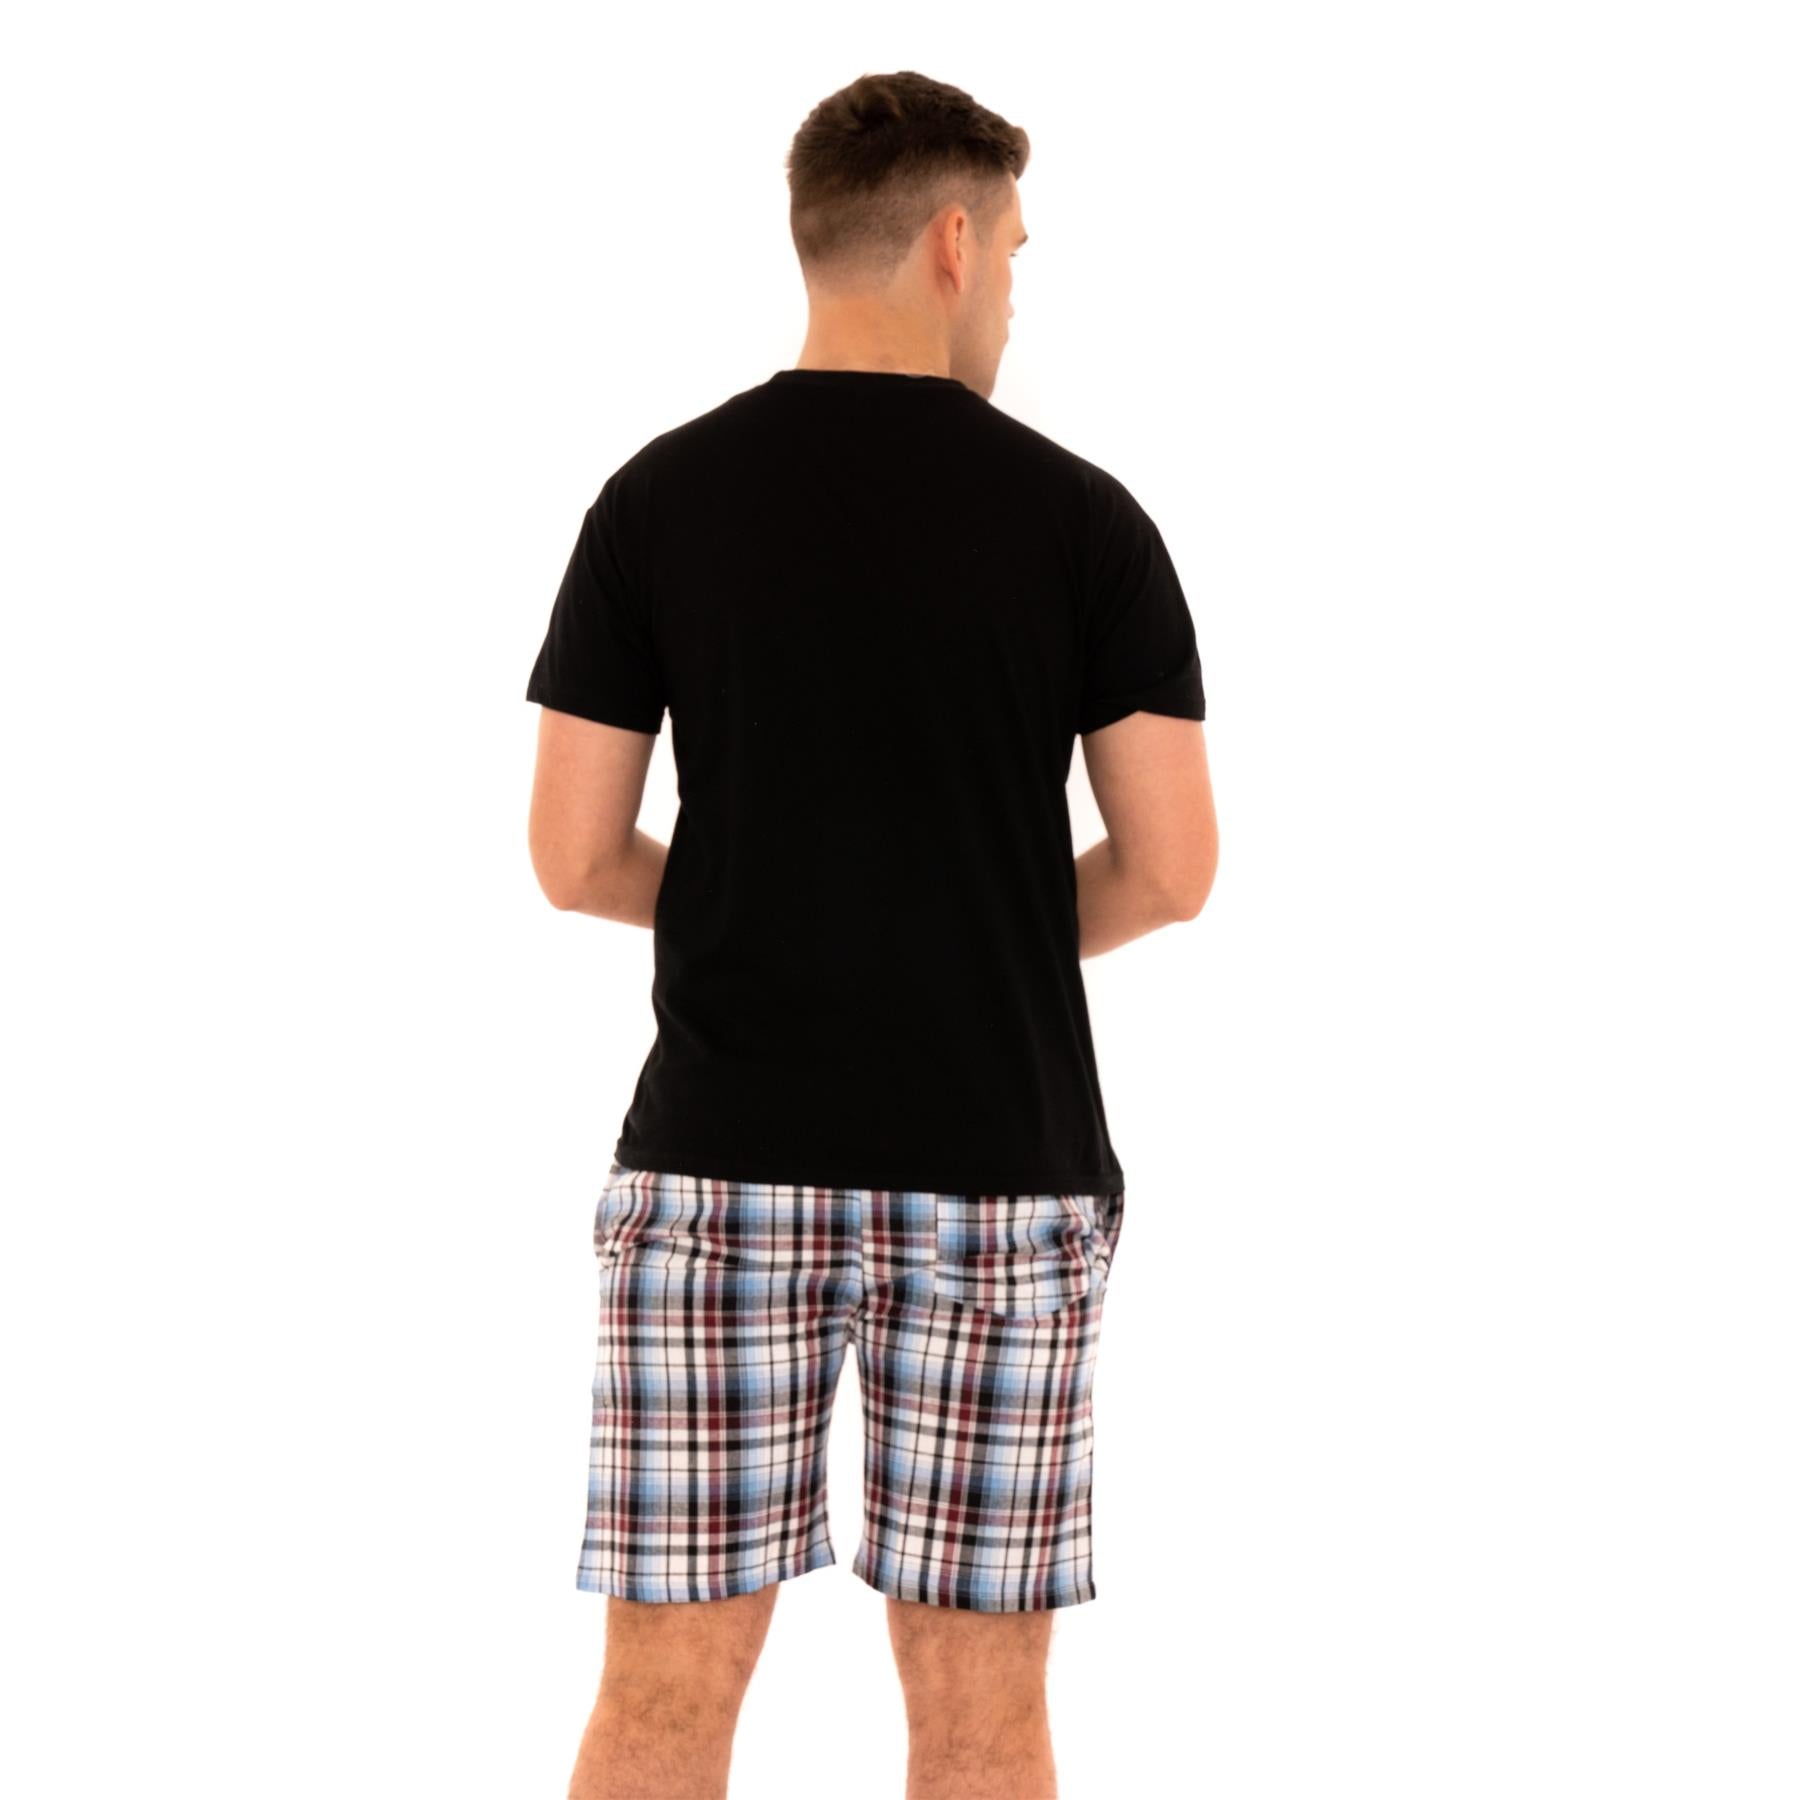 Woven Checked Shorts Pyjamas